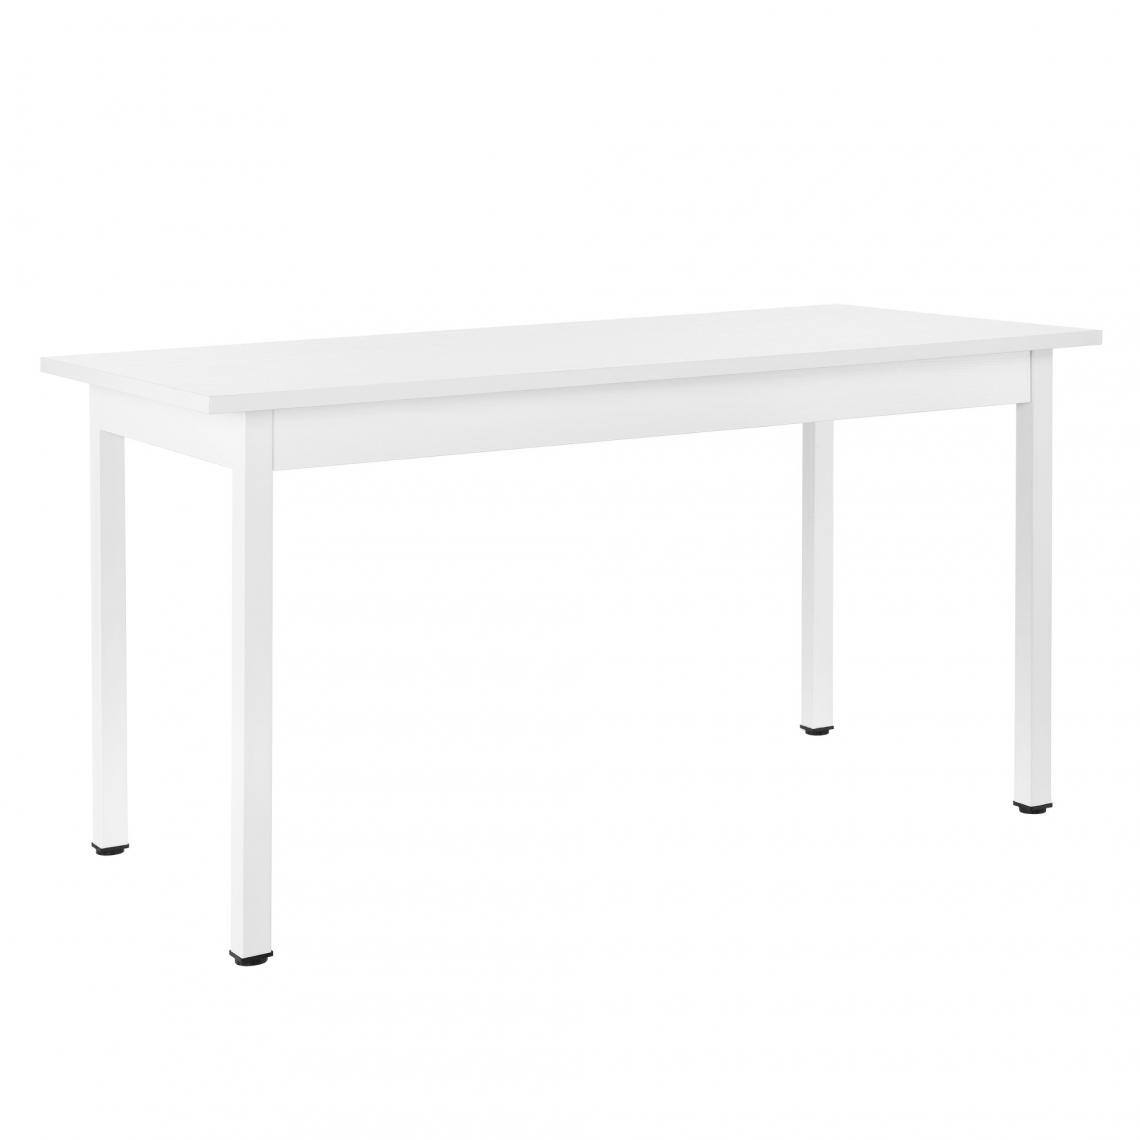 Helloshop26 - Table de salle cuisine bureau MDF placage acier 140 cm blanc 03_0004294 - Tables à manger